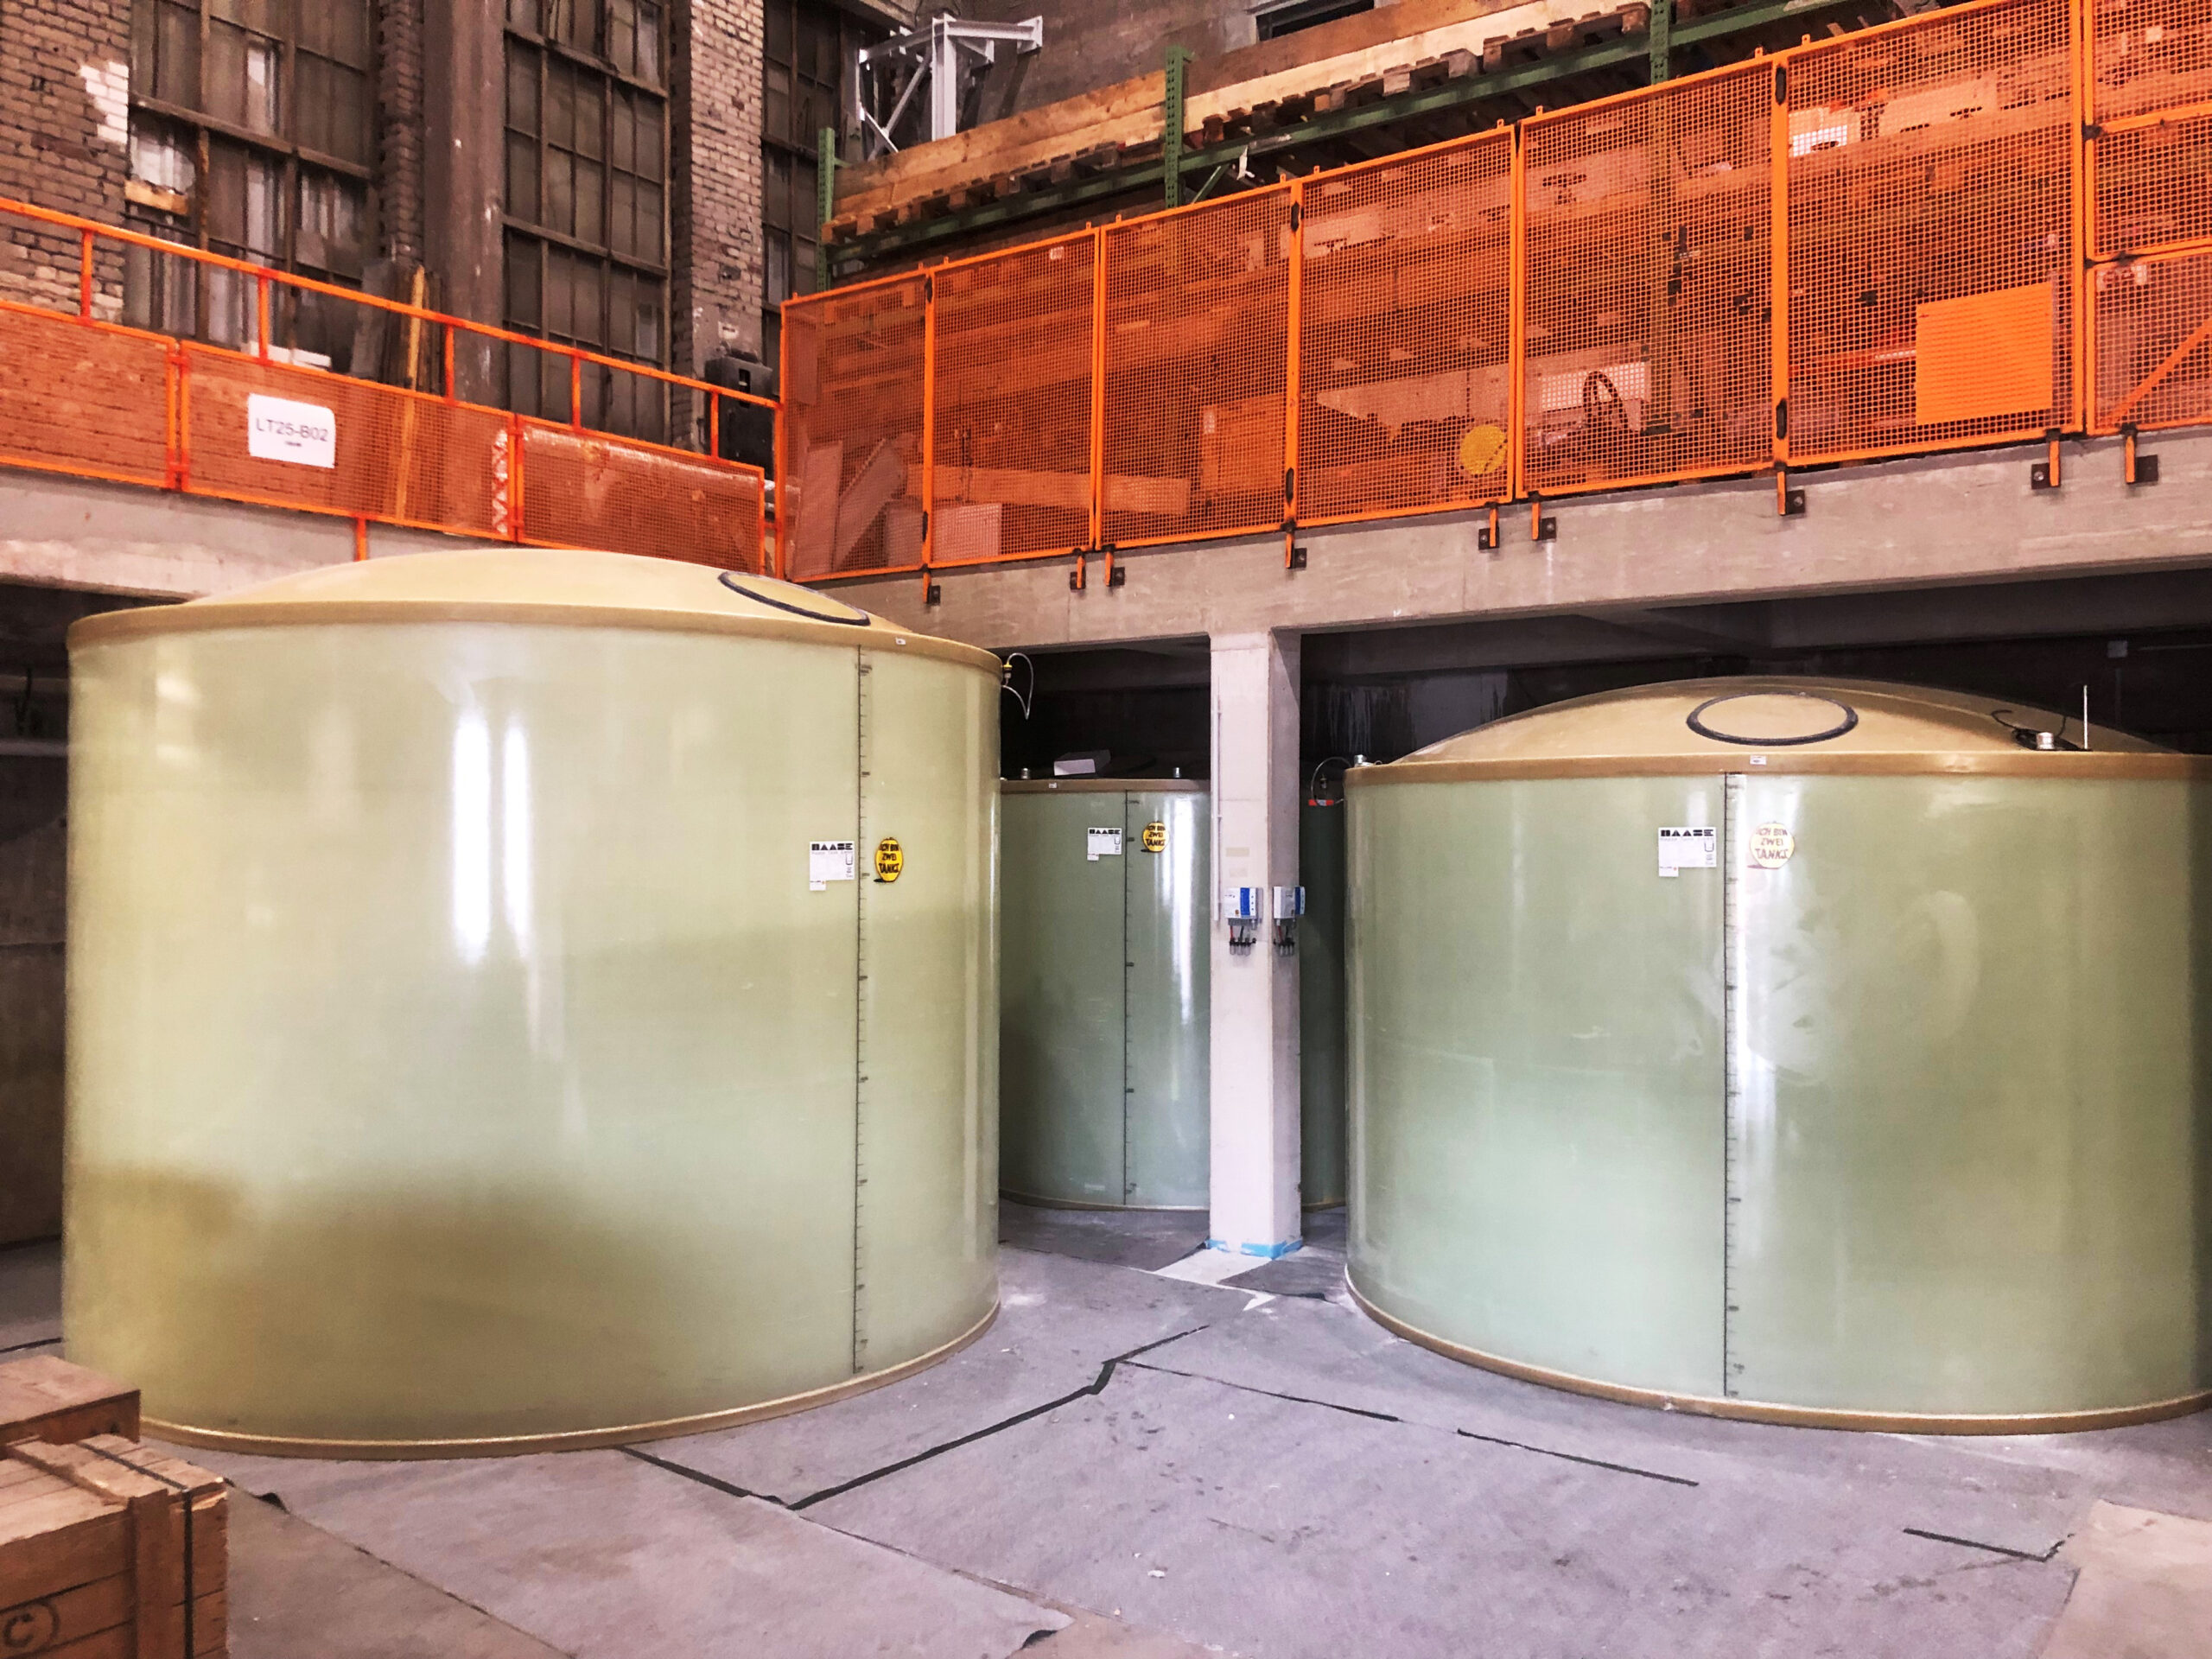 Die Tanks mit einem Füllvolumen von 81 m³ sind anschlussfertig montiert, gefüllt stehen sie für die Paierfabrik jetzt als Notfallrese bereit.